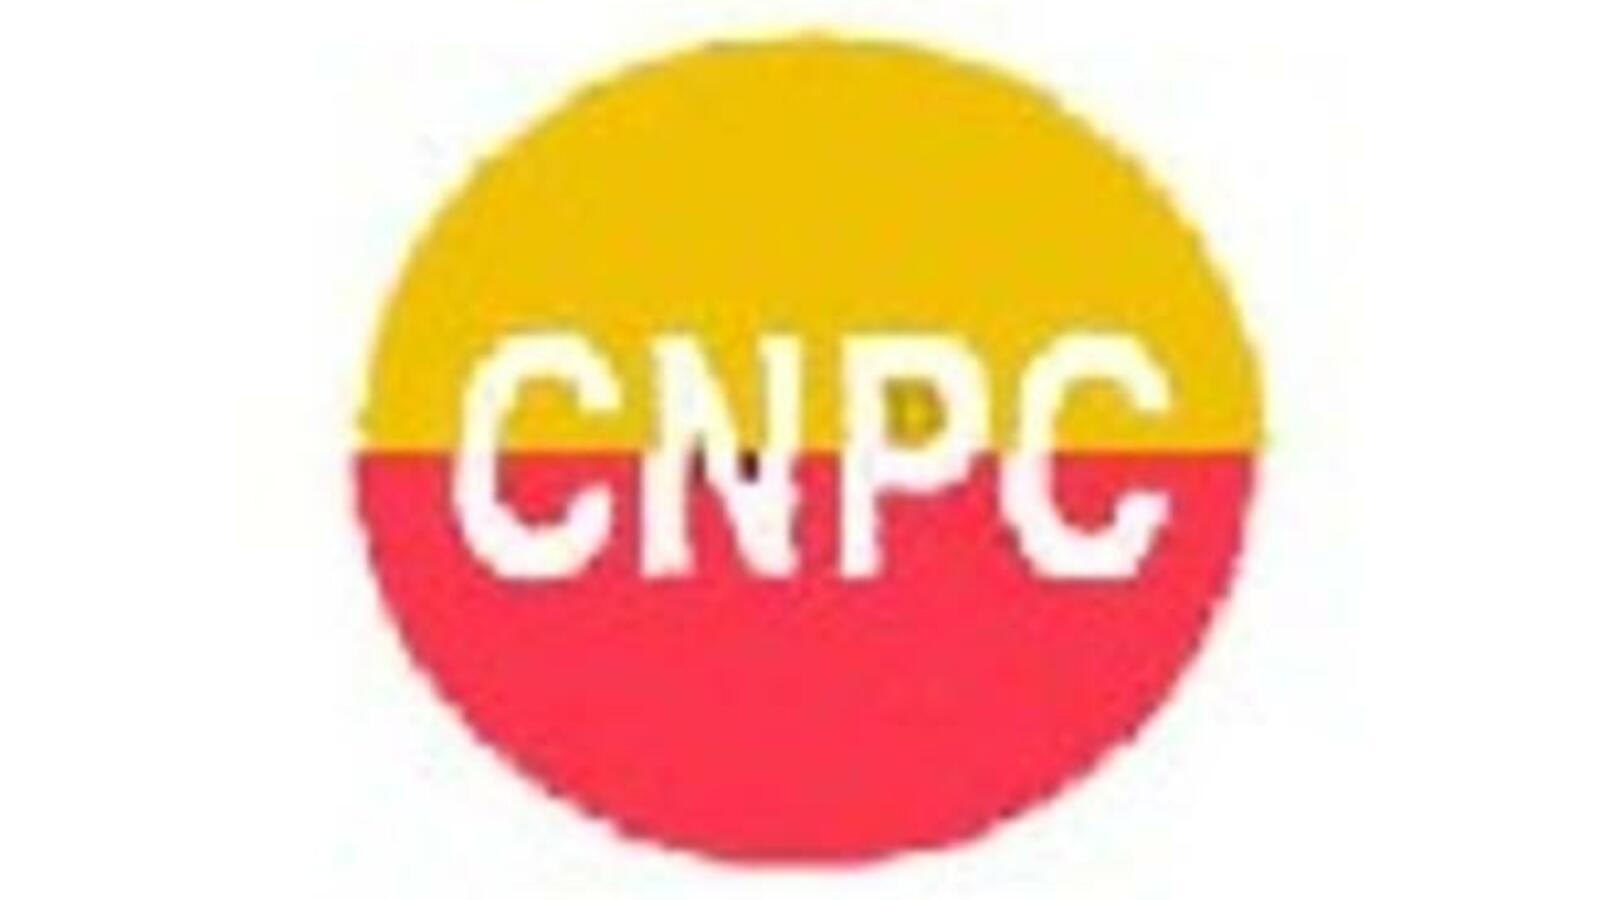 CNPC Logo - China National Petroleum Corporation signs Algeria deal